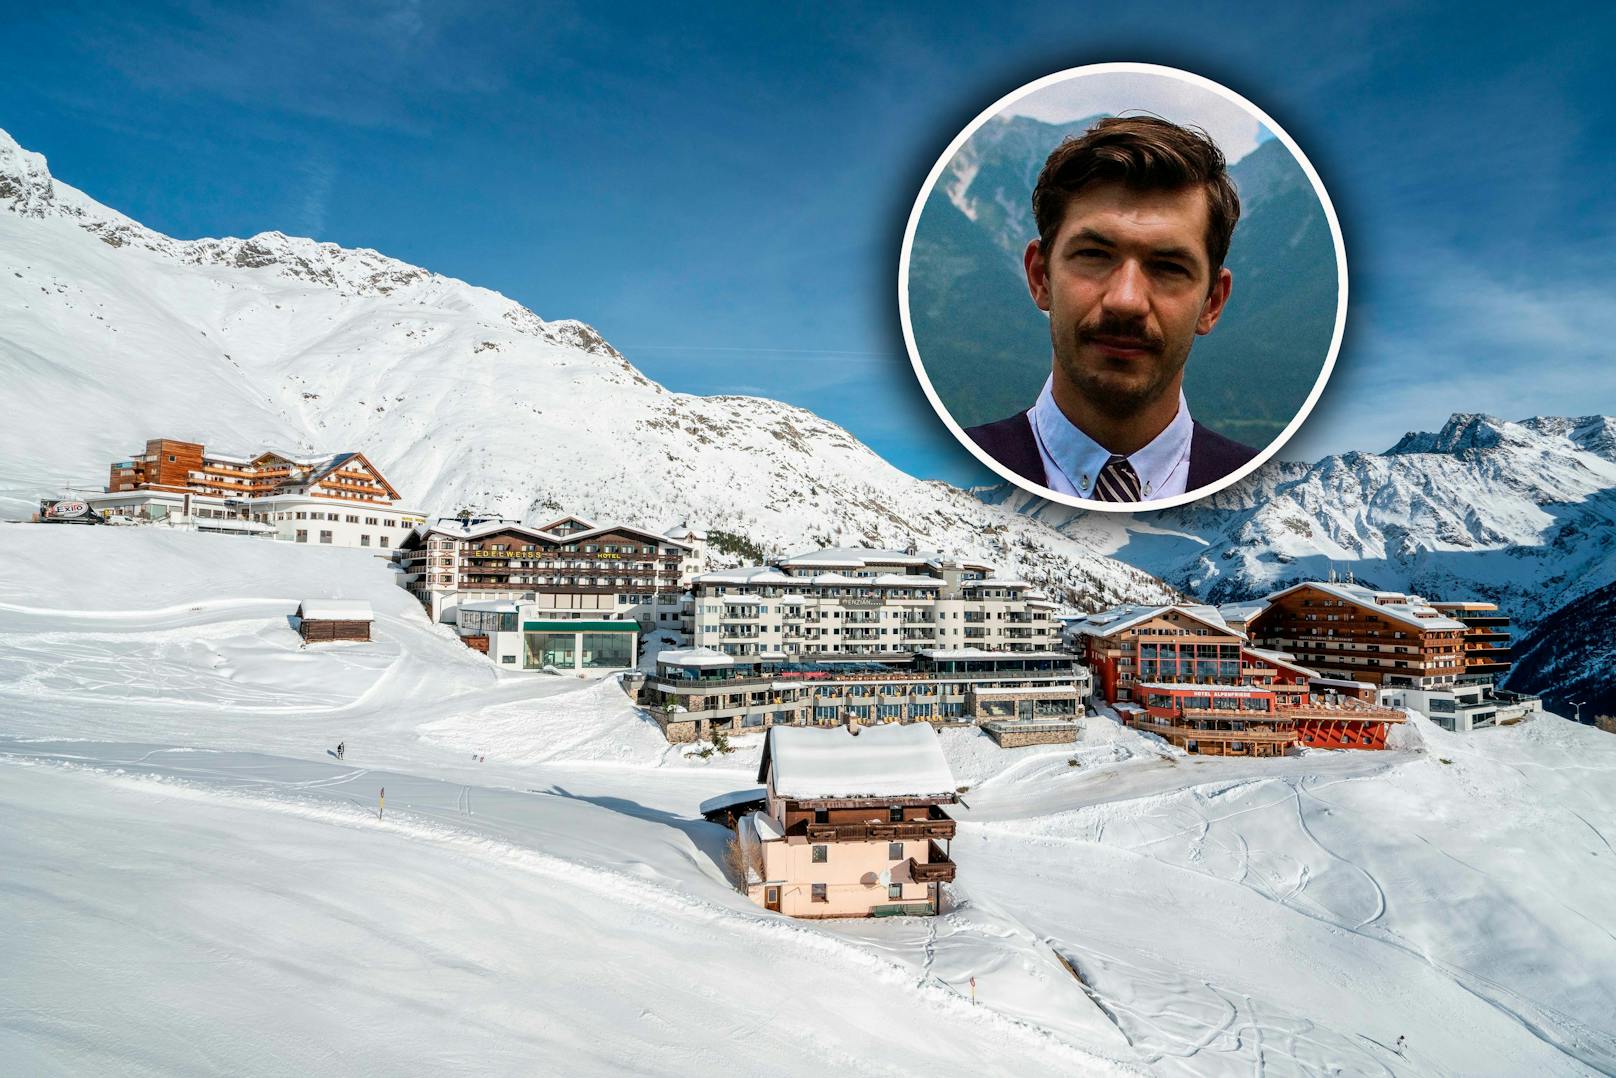 In den heimischen Skigebieten wird derzeit händeringend nach Personal gesucht. Peter Mayer versucht mit seiner Agentur zu vermitteln. "Es gibt Betriebe in Ischgl, Sölden, oder Kitzbühel, die für einen guten Koch, der fließend Deutsch spricht, zwischen 4.500 Euro und 6.000 Euro zahlen."